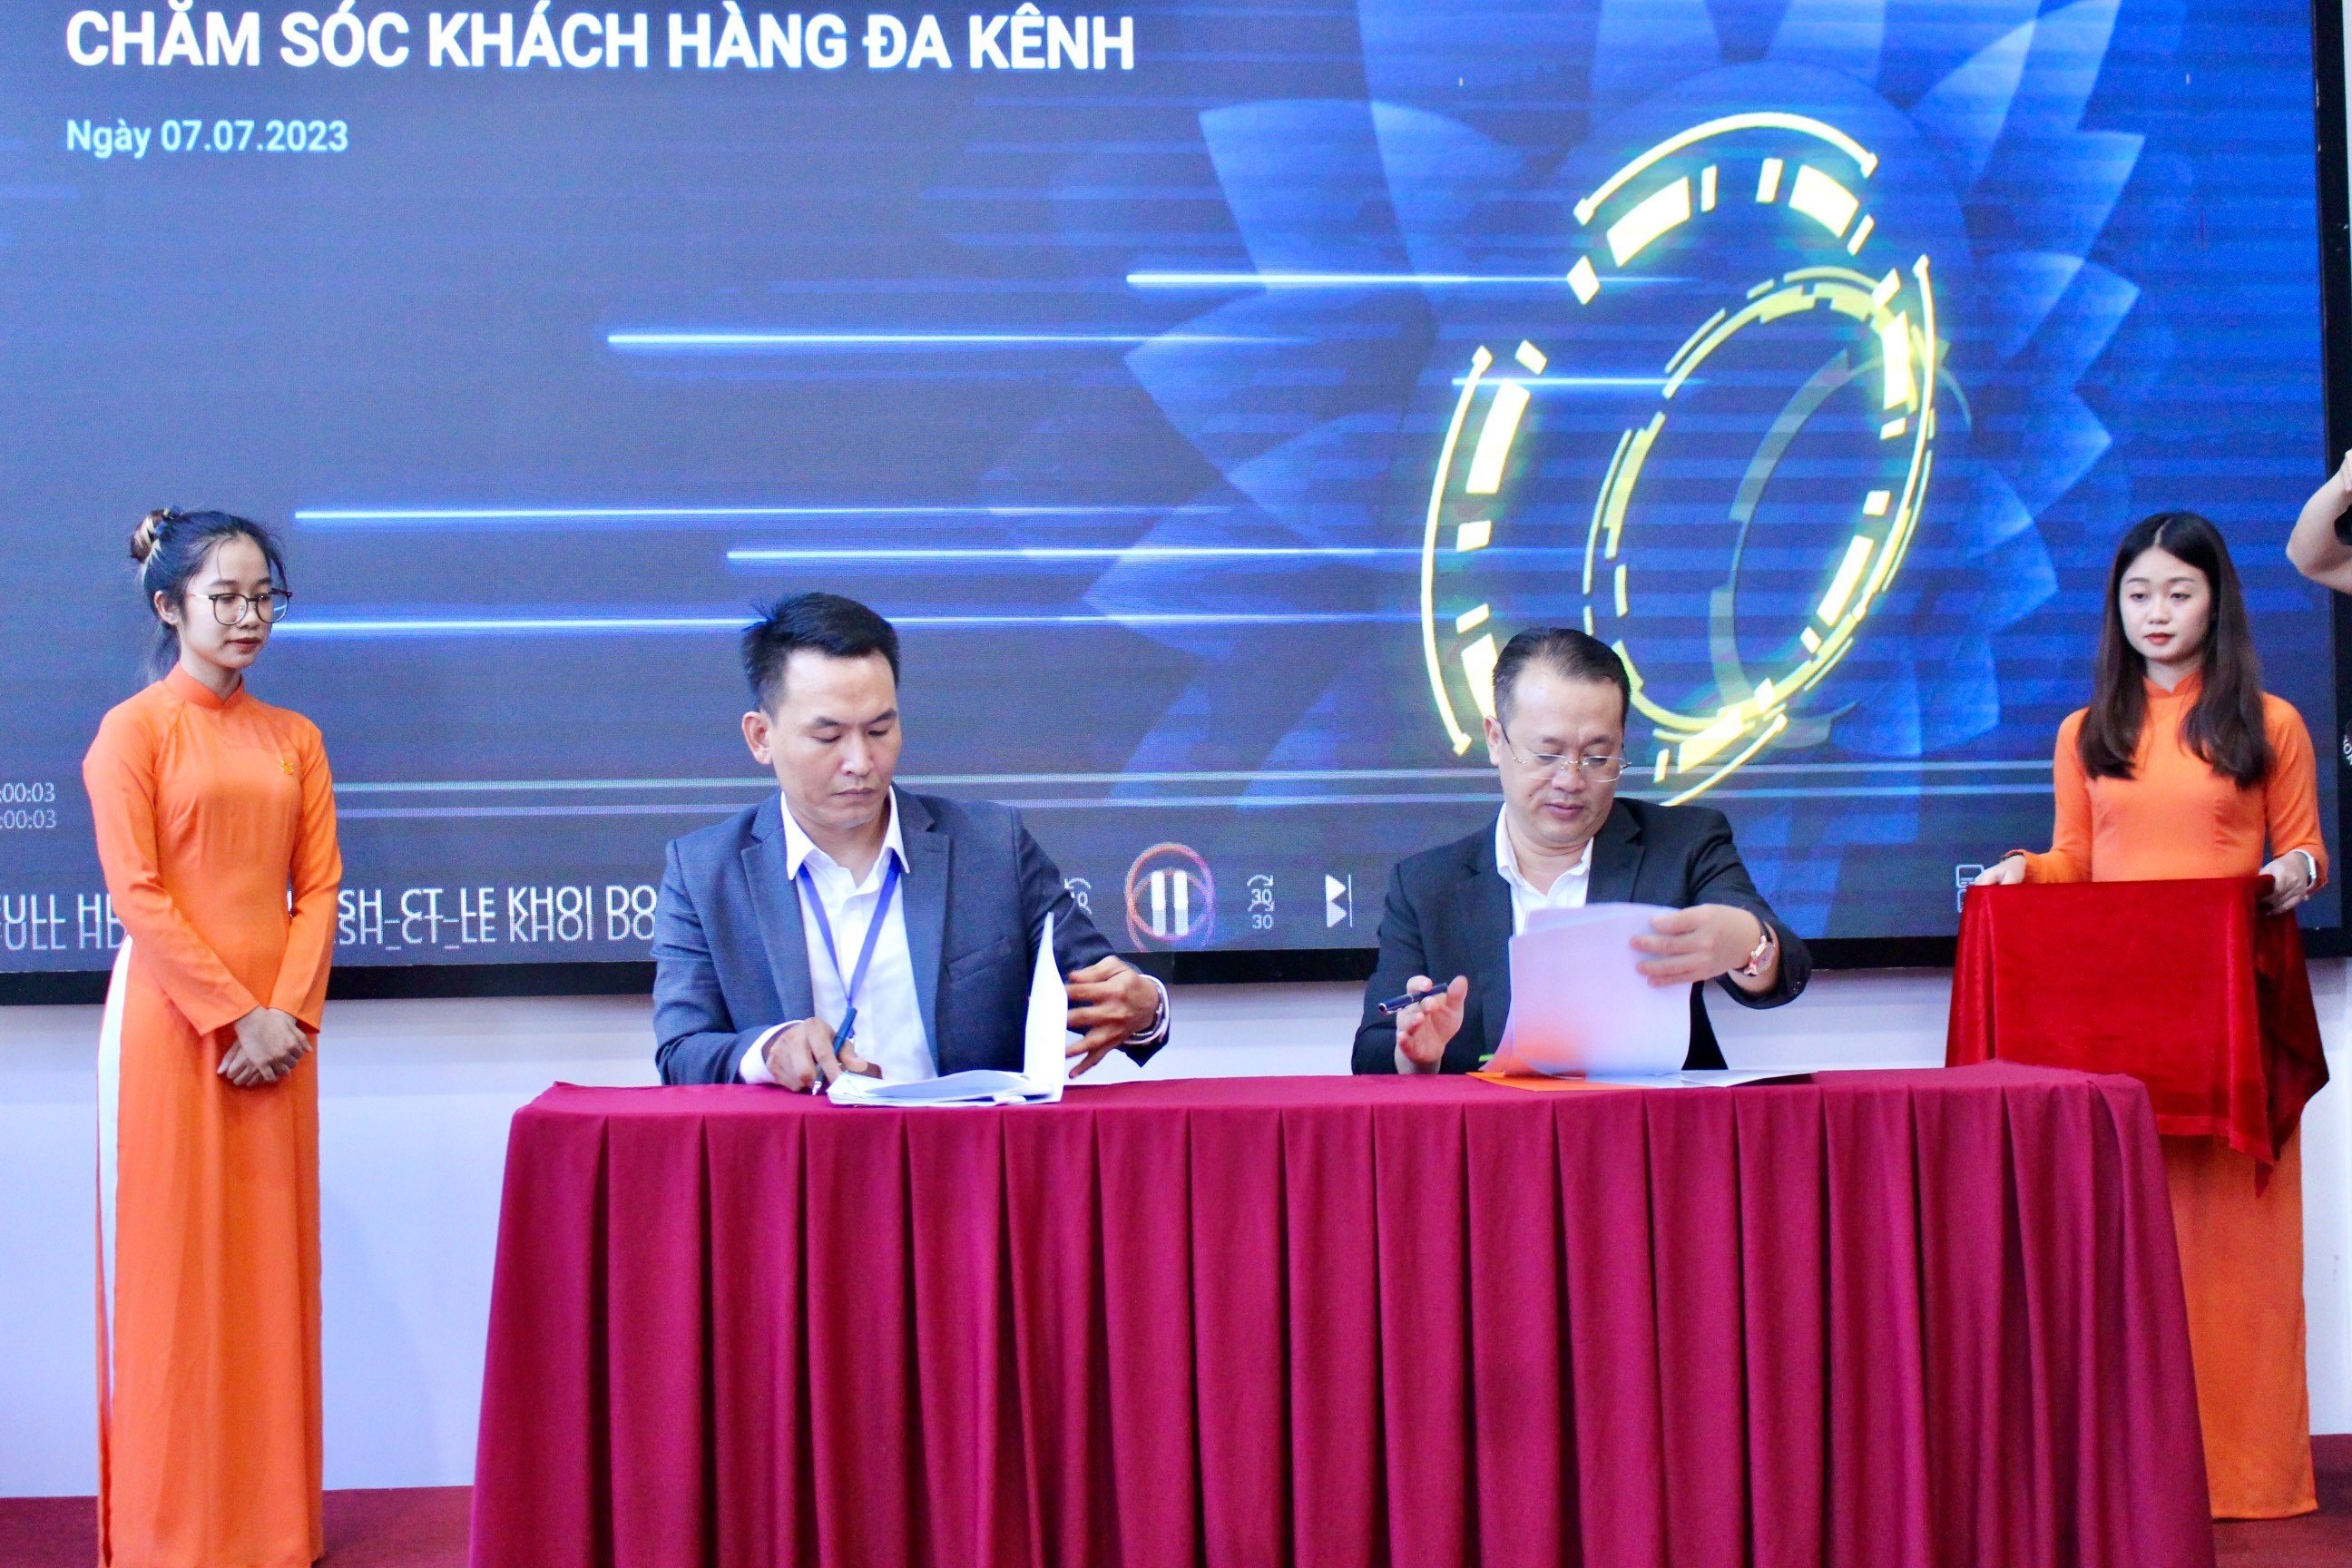 Anh Bùi Cao Học (trái) - Founder & CEO của Công ty TNHH CLOUDGO và anh Lê Vi Hiển (phải) - Chủ tịch HĐQT của Công ty Cổ phần GONSA đang kí kết hợp đồng tại buổi lễ